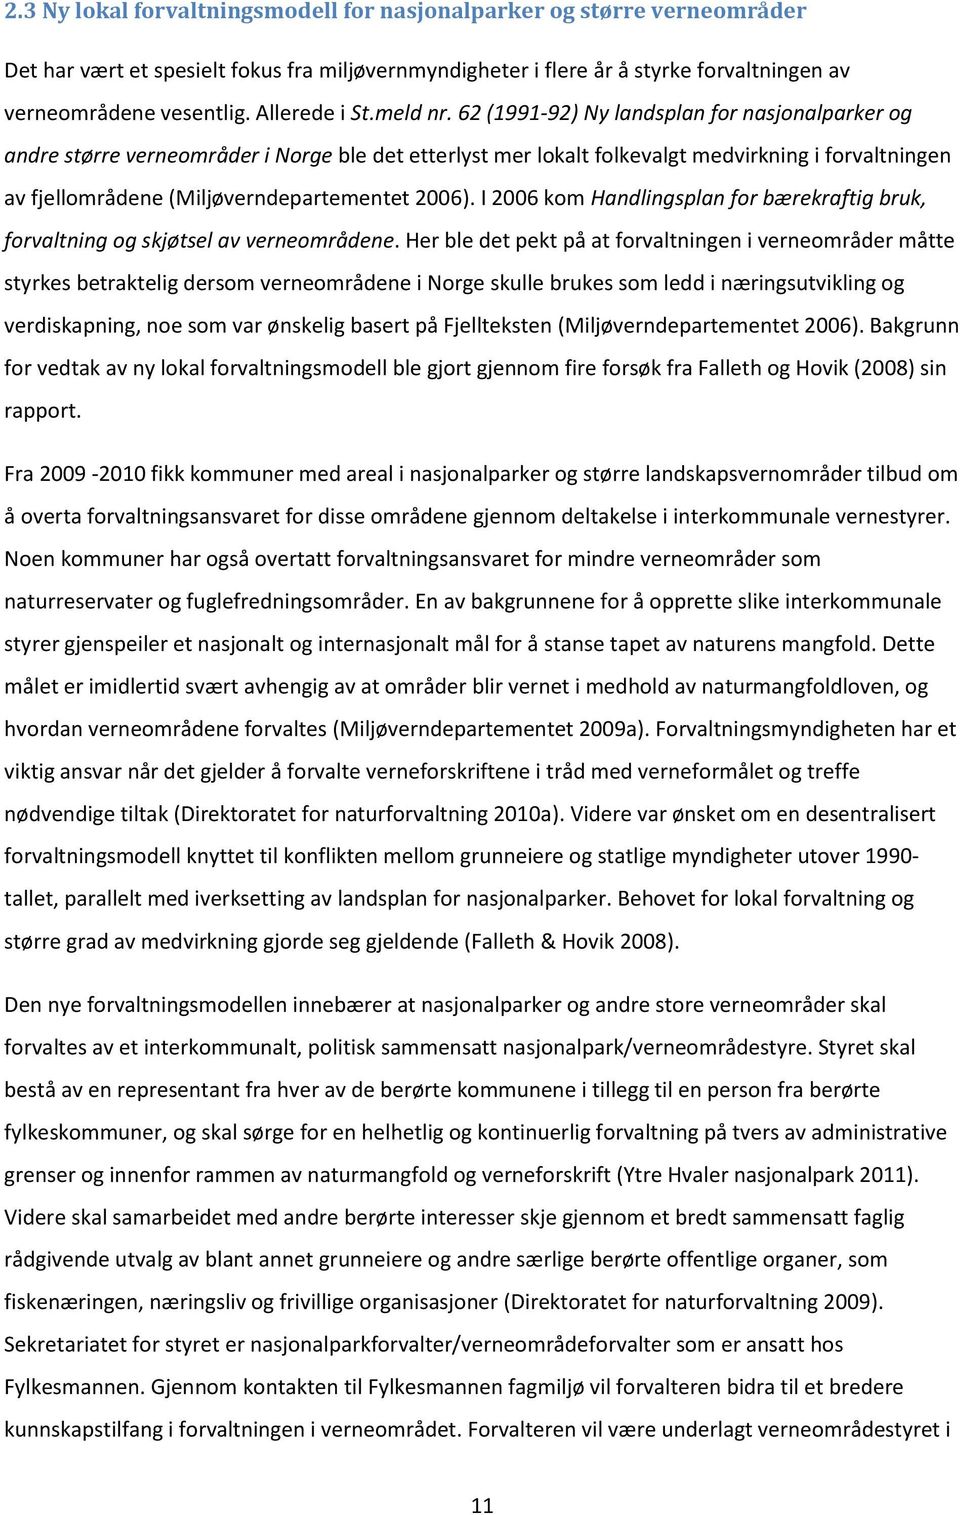 62 (1991-92) Ny landsplan for nasjonalparker og andre større verneområder i Norge ble det etterlyst mer lokalt folkevalgt medvirkning i forvaltningen av fjellområdene (Miljøverndepartementet 2006).